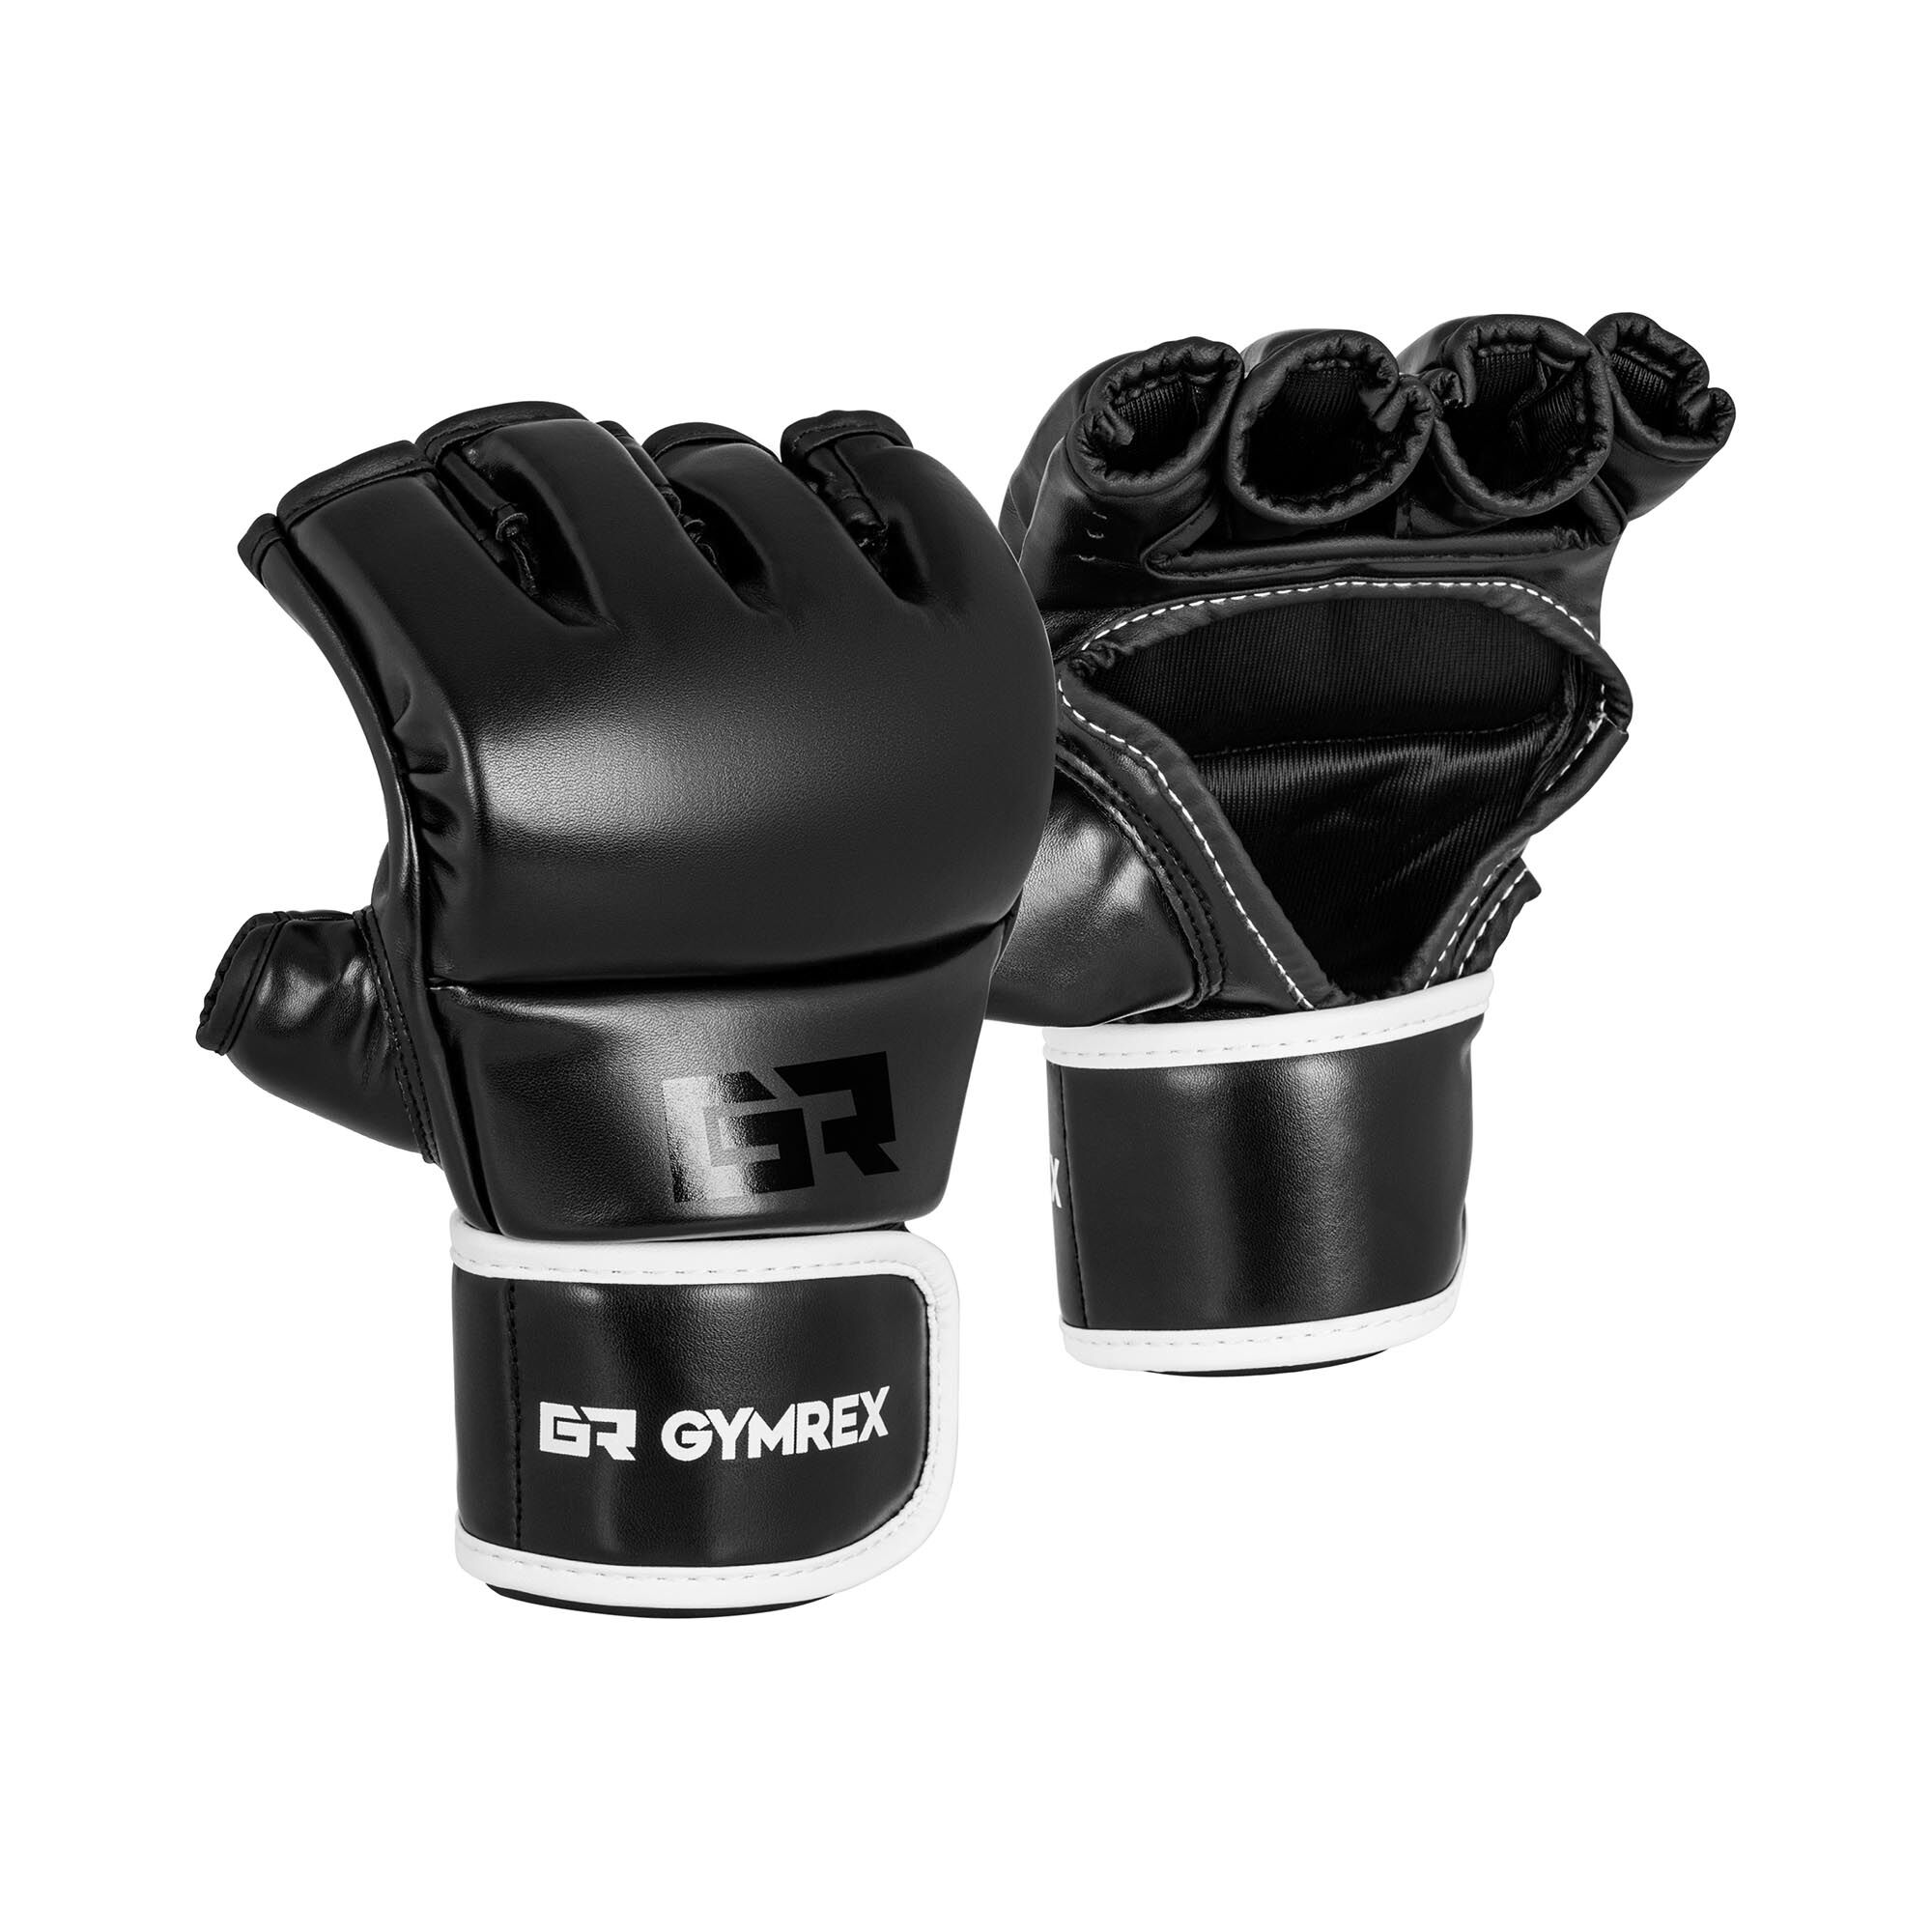 Gymrex MMA rukavice - vel. S/M - černé GR-GGB S/M